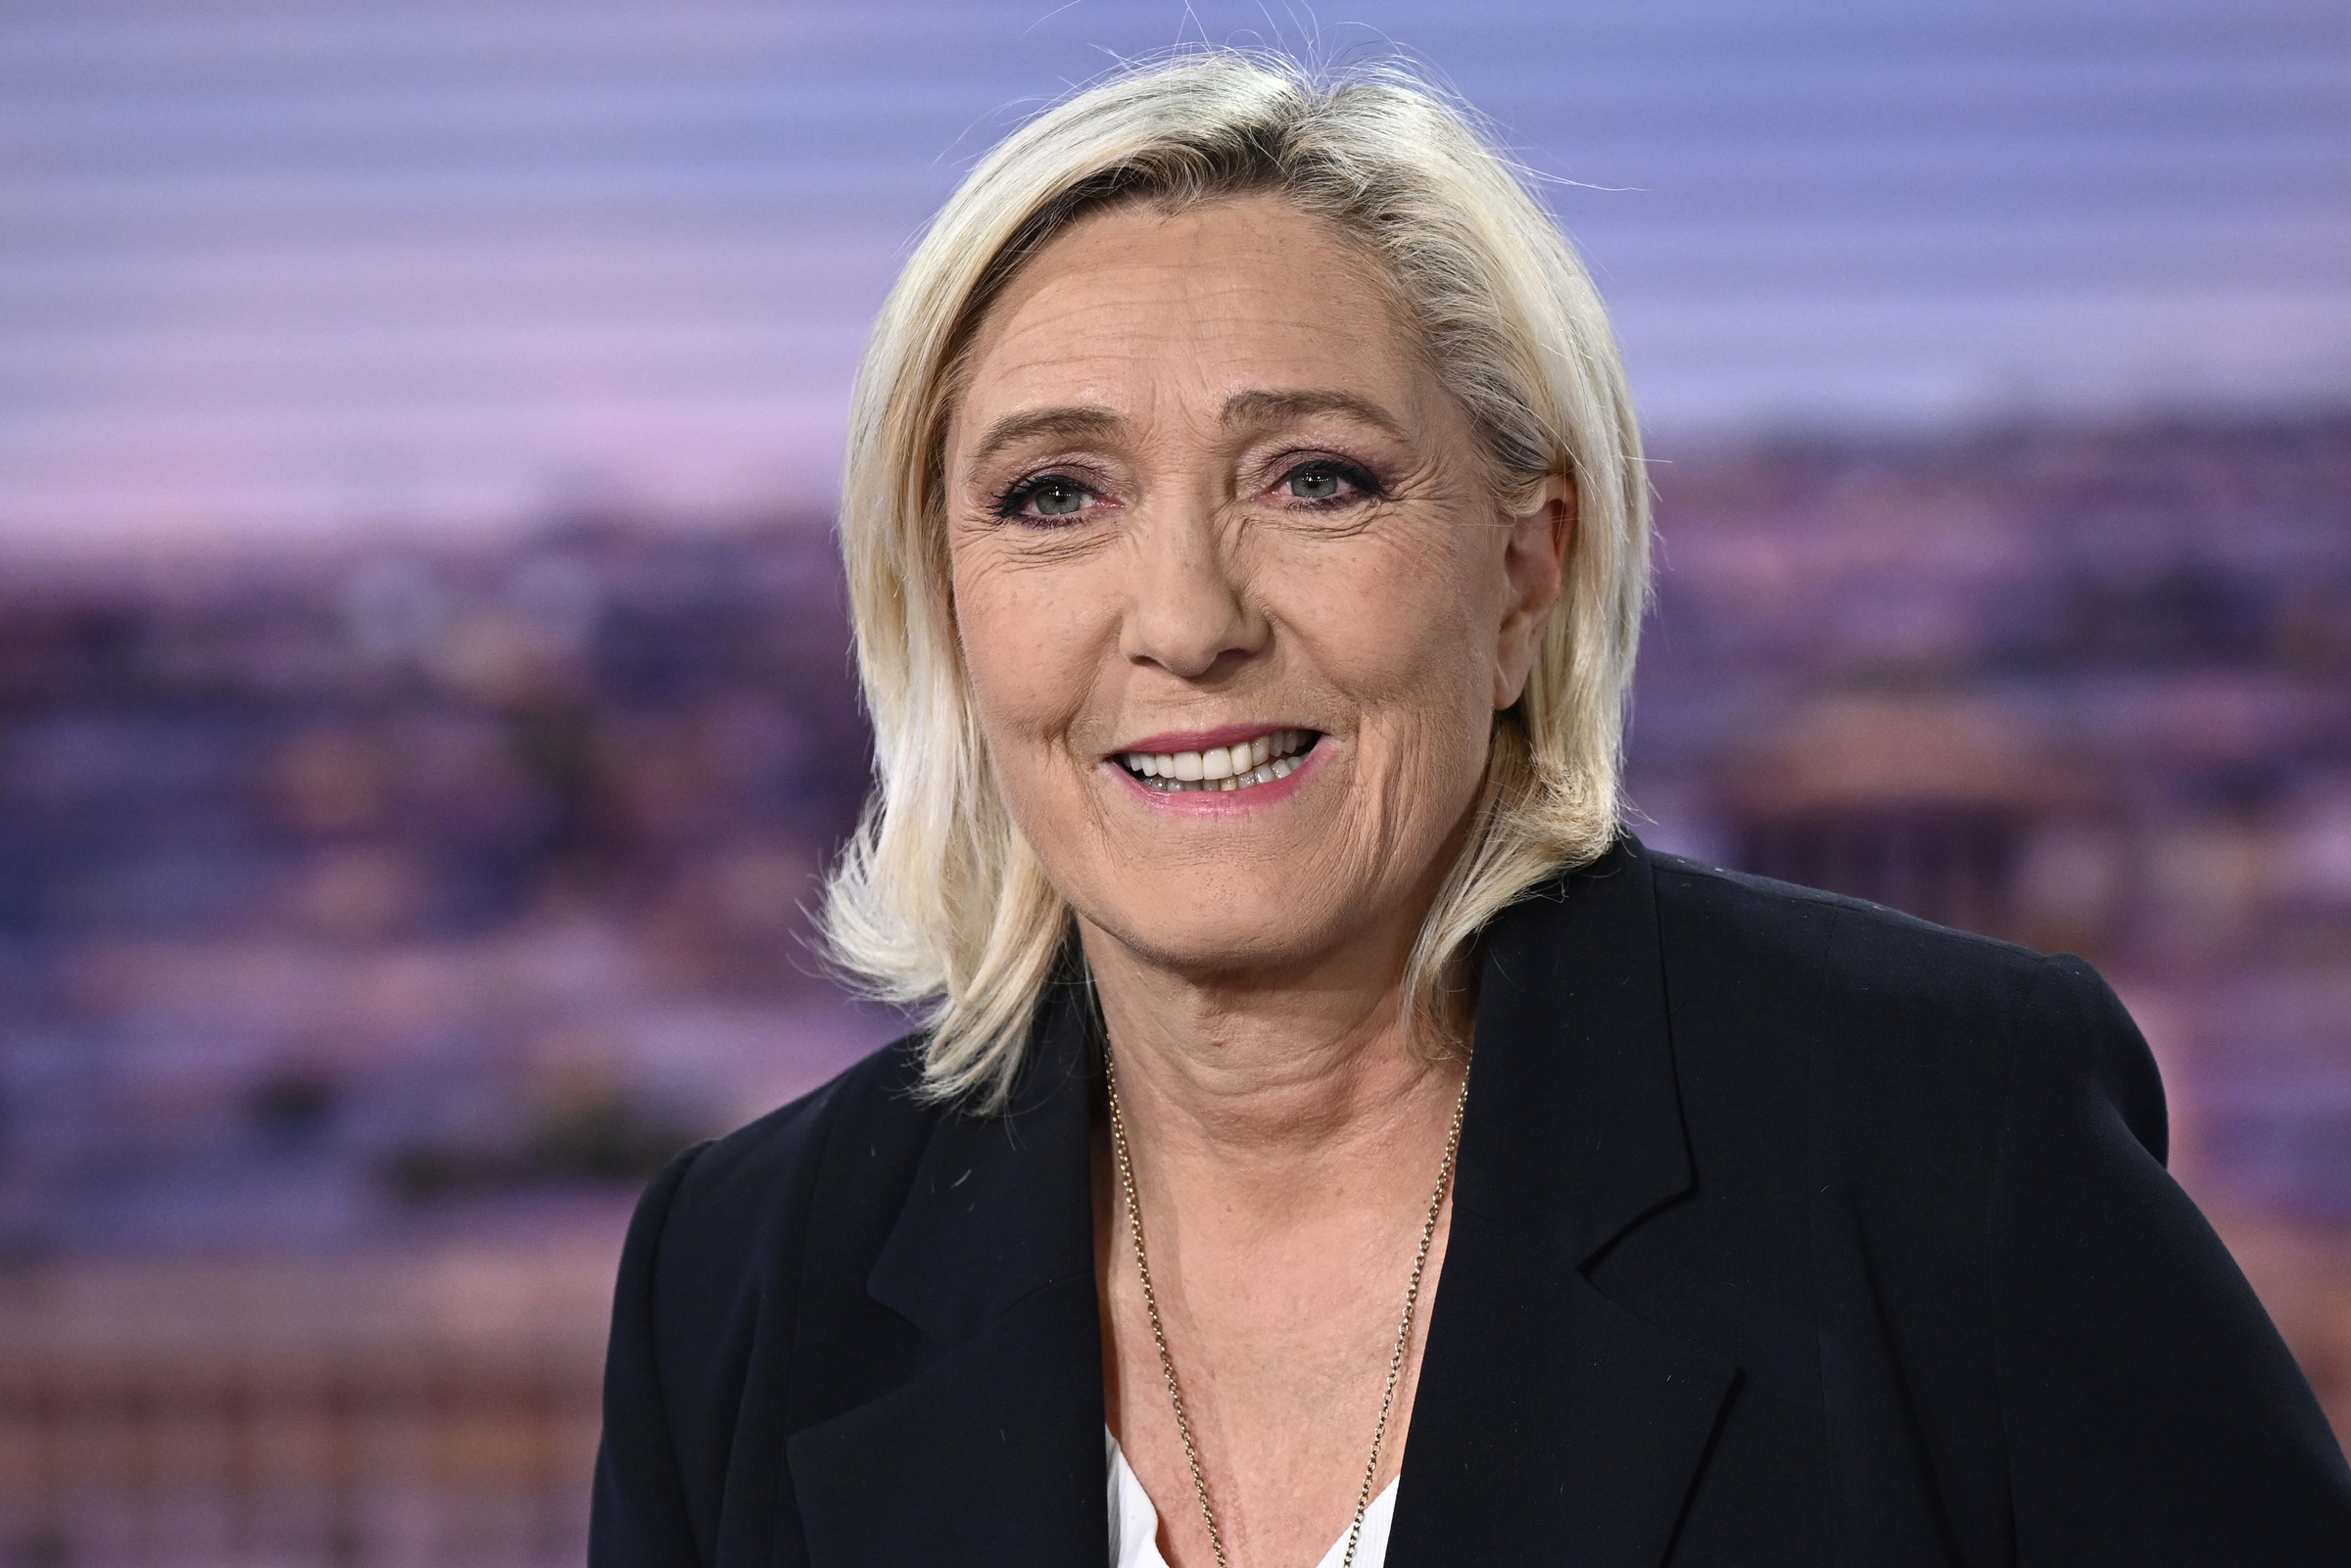 Lãnh đạo đảng cực tả Mặt trận Quốc gia Marine Le Pen trả lời phỏng vấn tại Boulogne-Billancourt, ngoại ô Paris ngày 10/6. Ảnh: AP